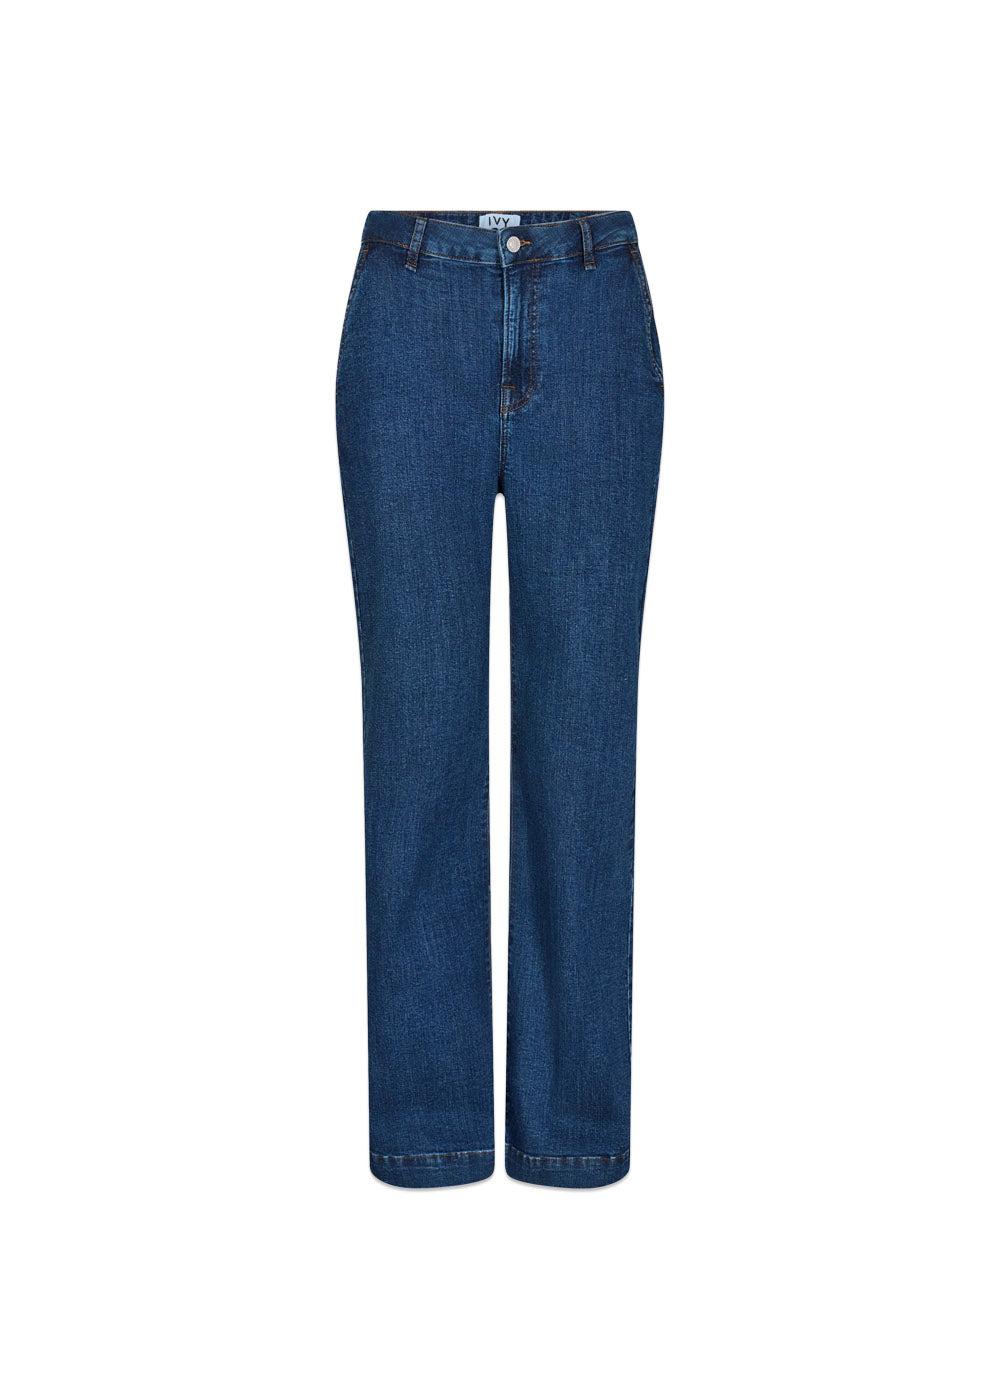 IVY-Brooke French Jeans Wash Middark Nottingham - Denim Blue